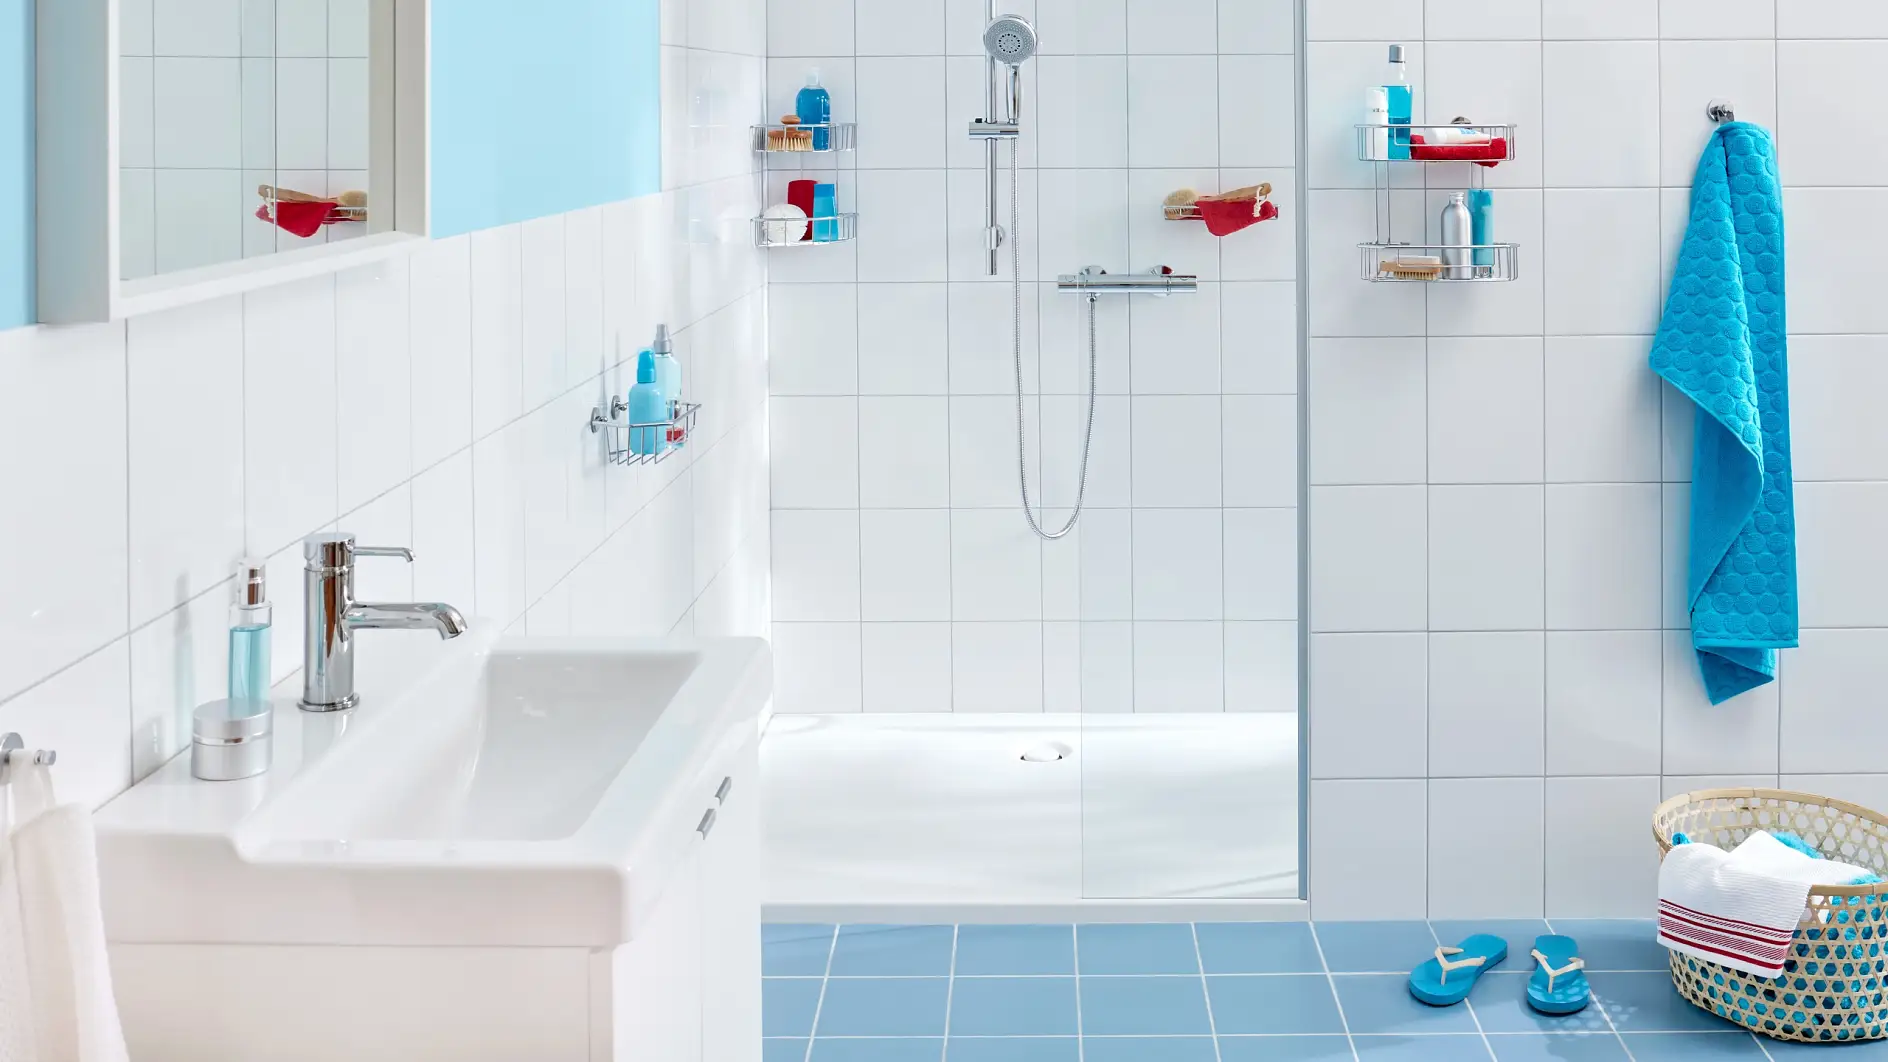 Moderne Aufbewahrungslösungen für das Badezimmer in funktionellem Design.